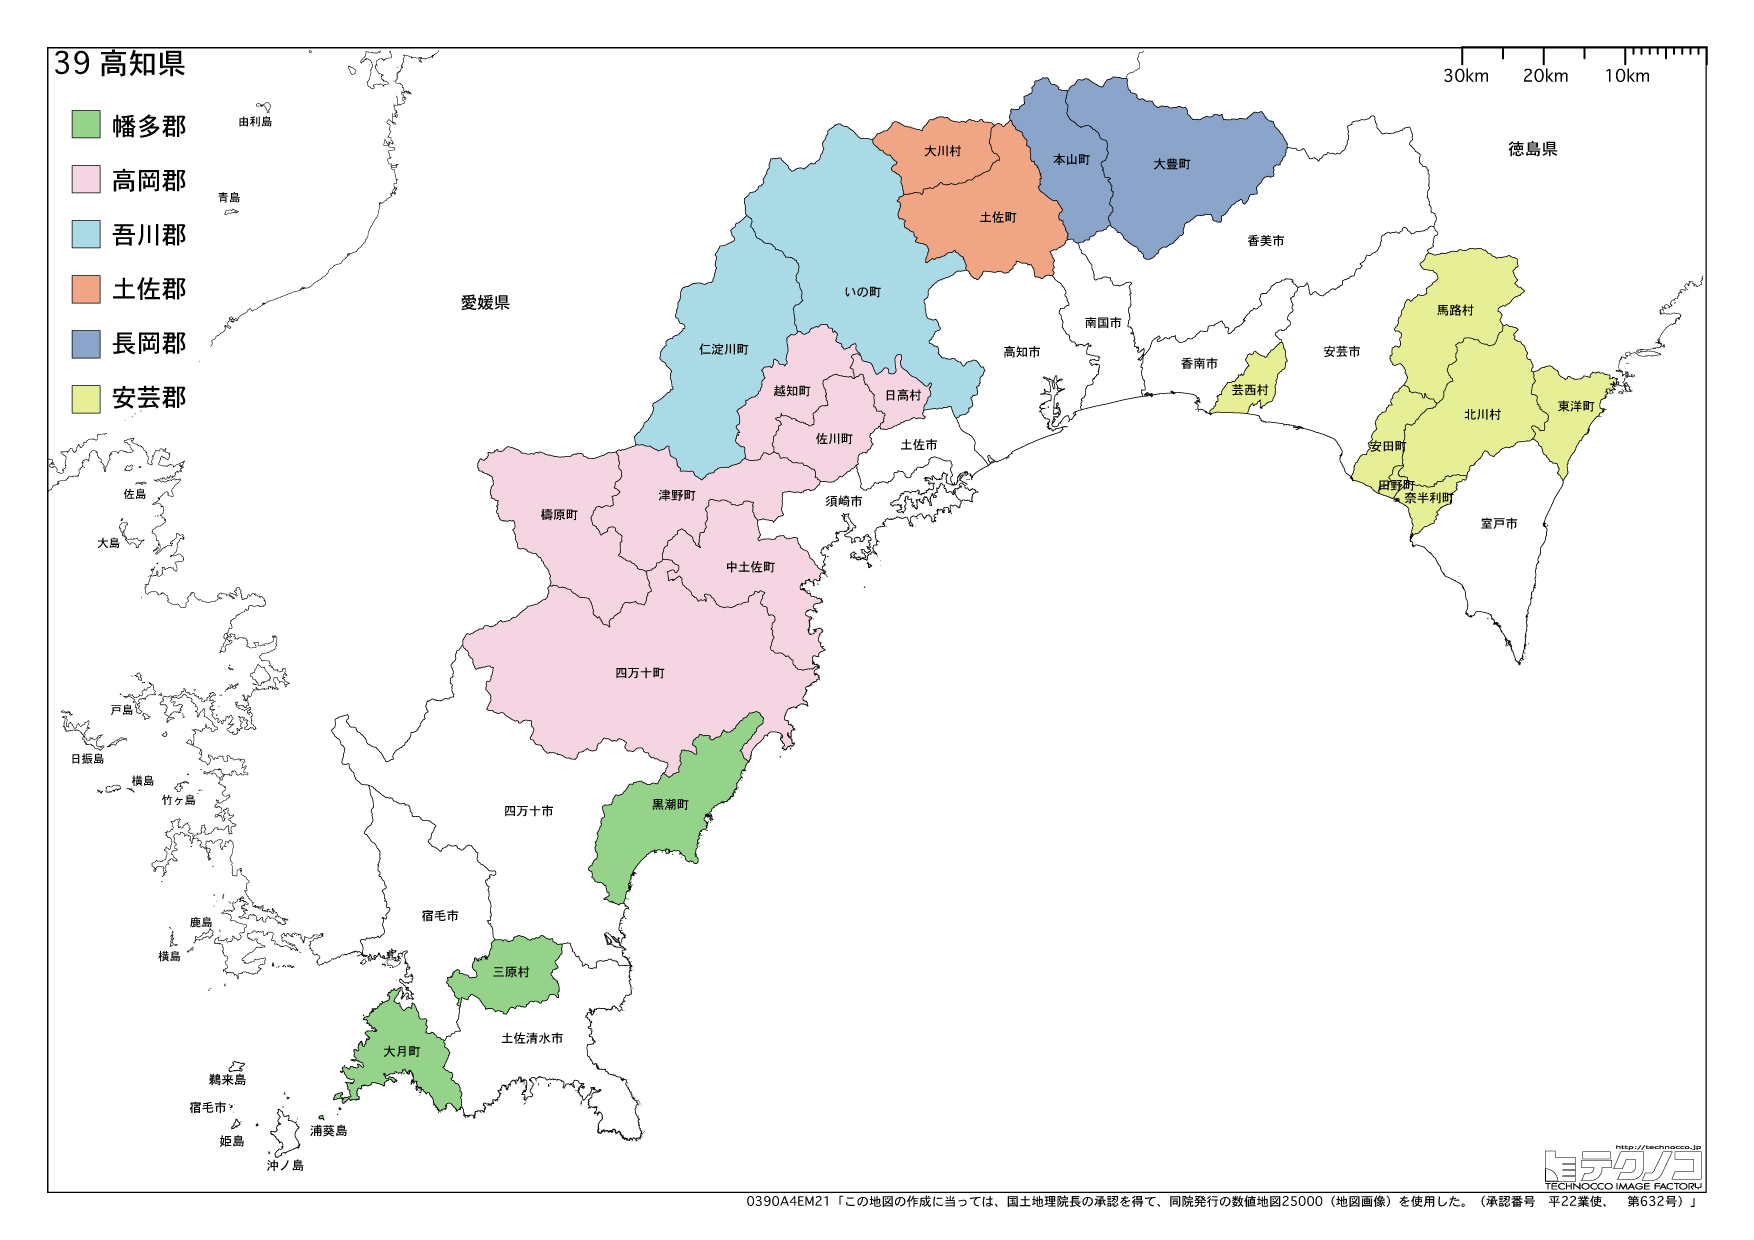 高知県の白地図と市町村の合併情報